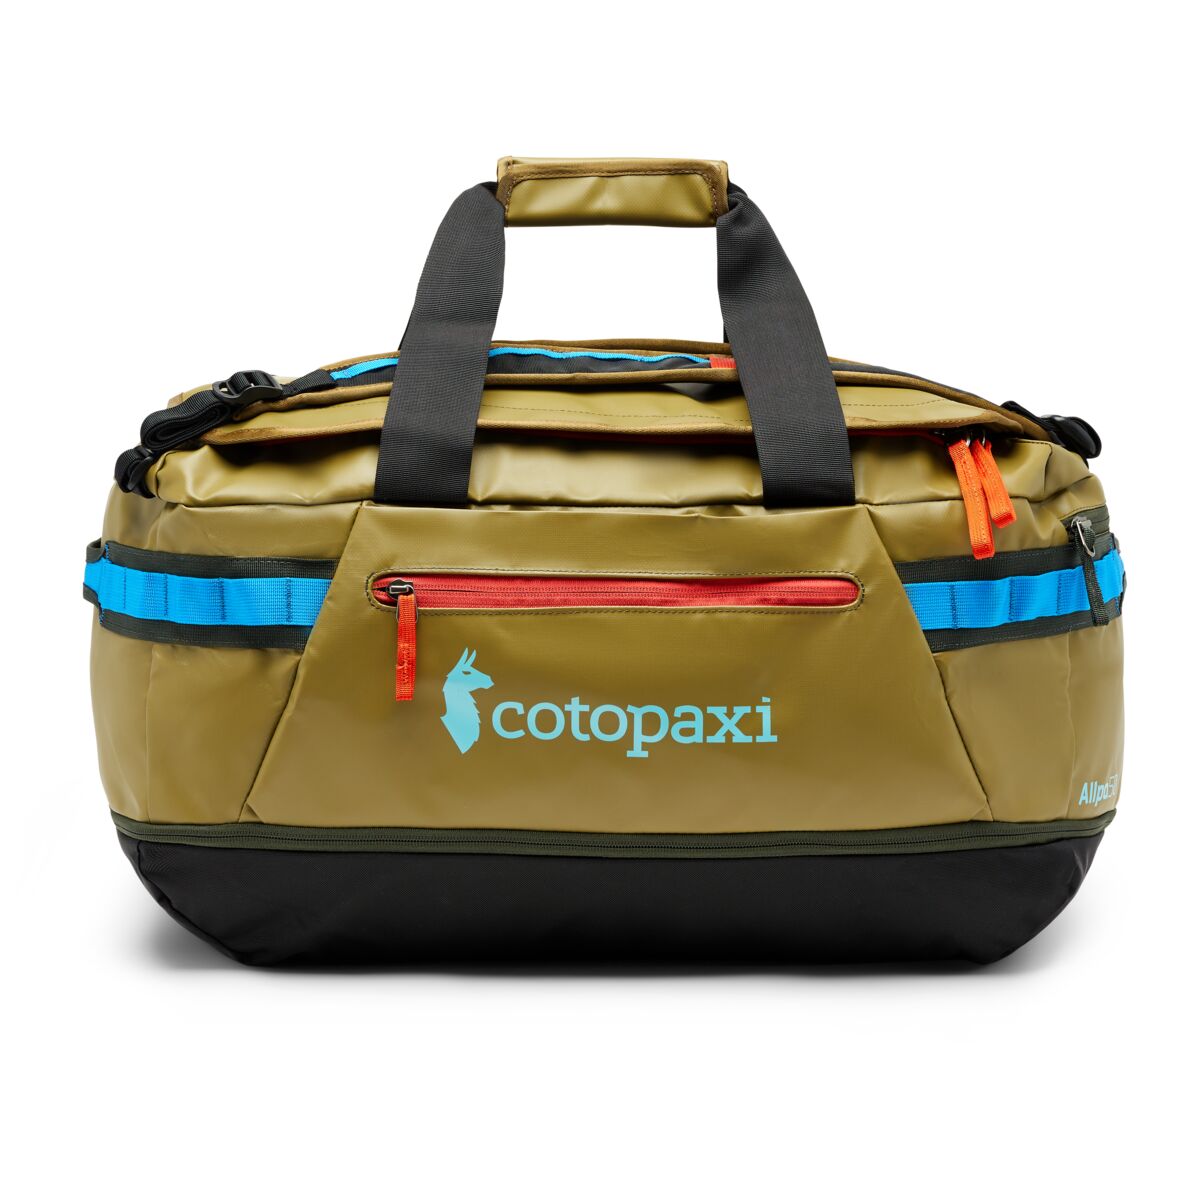 Cotopaxi Allpa 50L Duffel Bag - Oak - Canada Luggage Depot